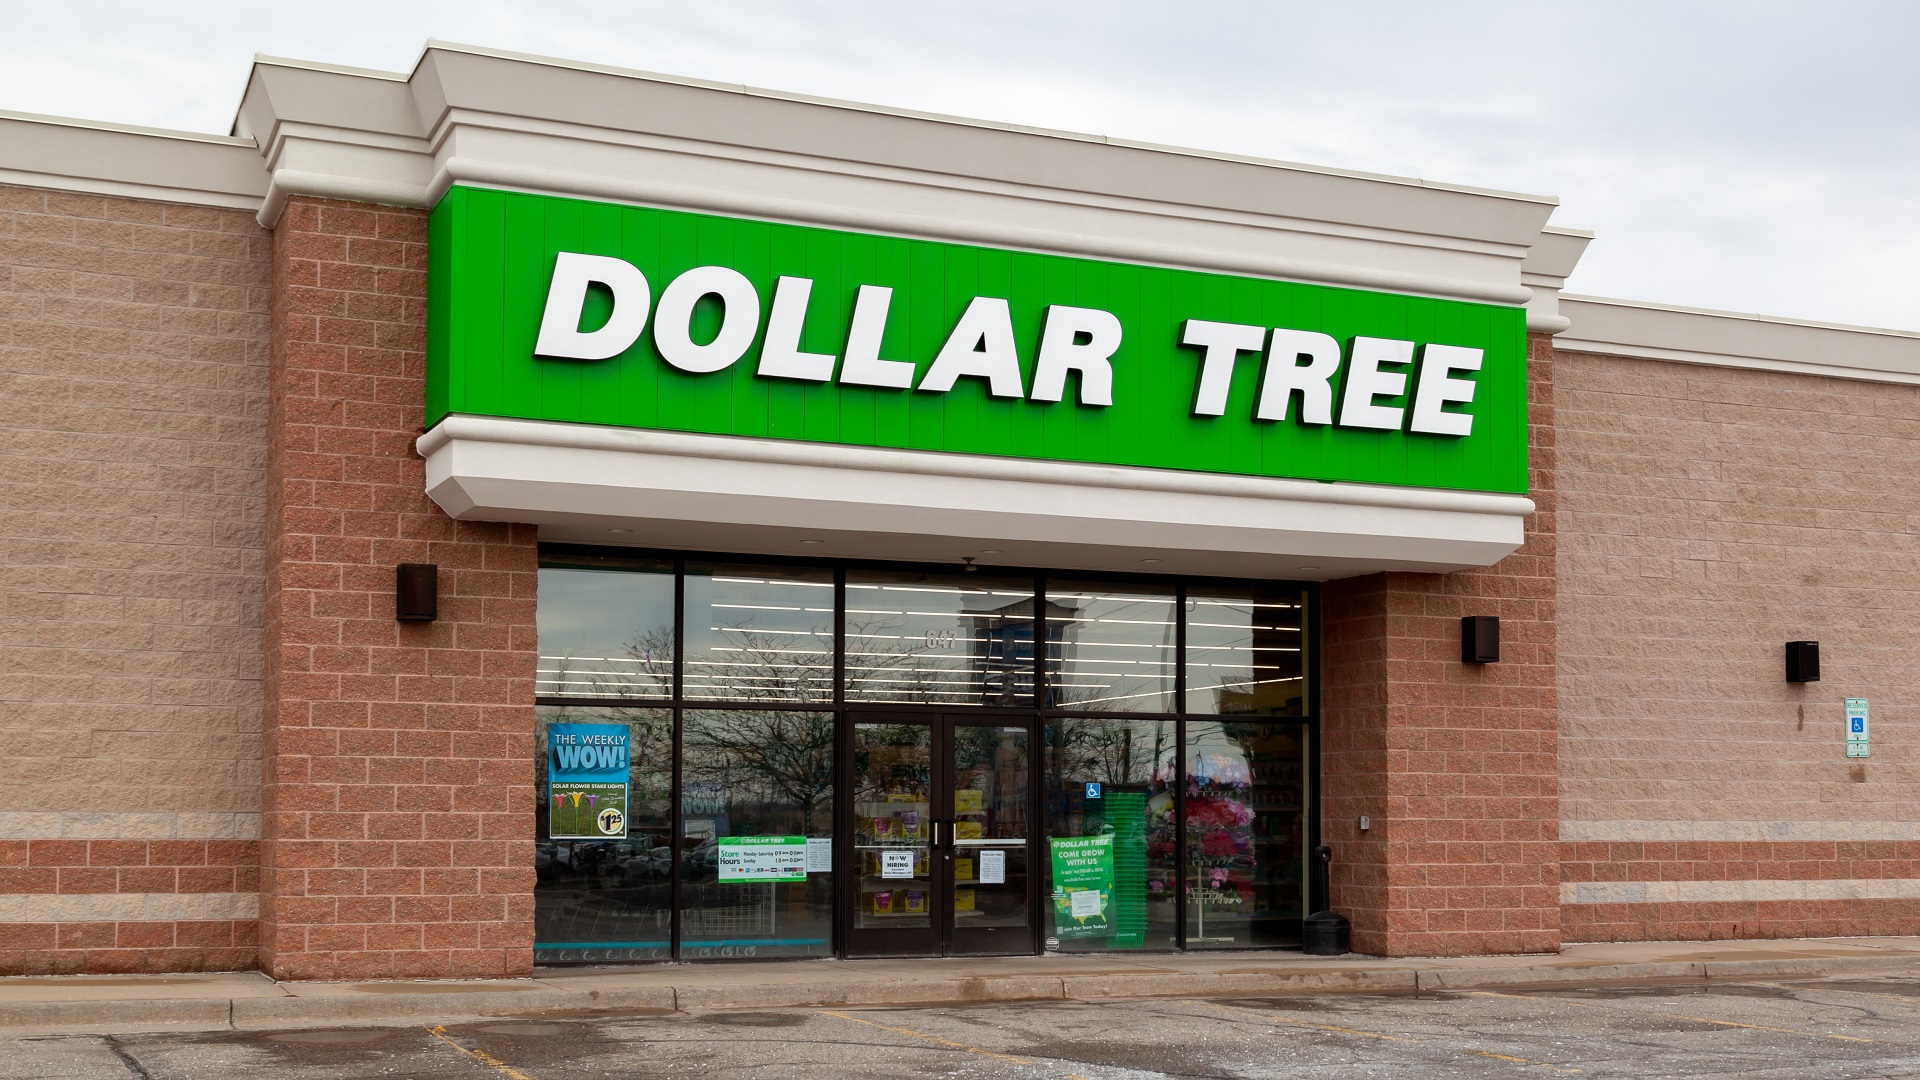 ABD li mağaza zinciri Dollar Tree 1000 e yakın mağazasını kapatacak